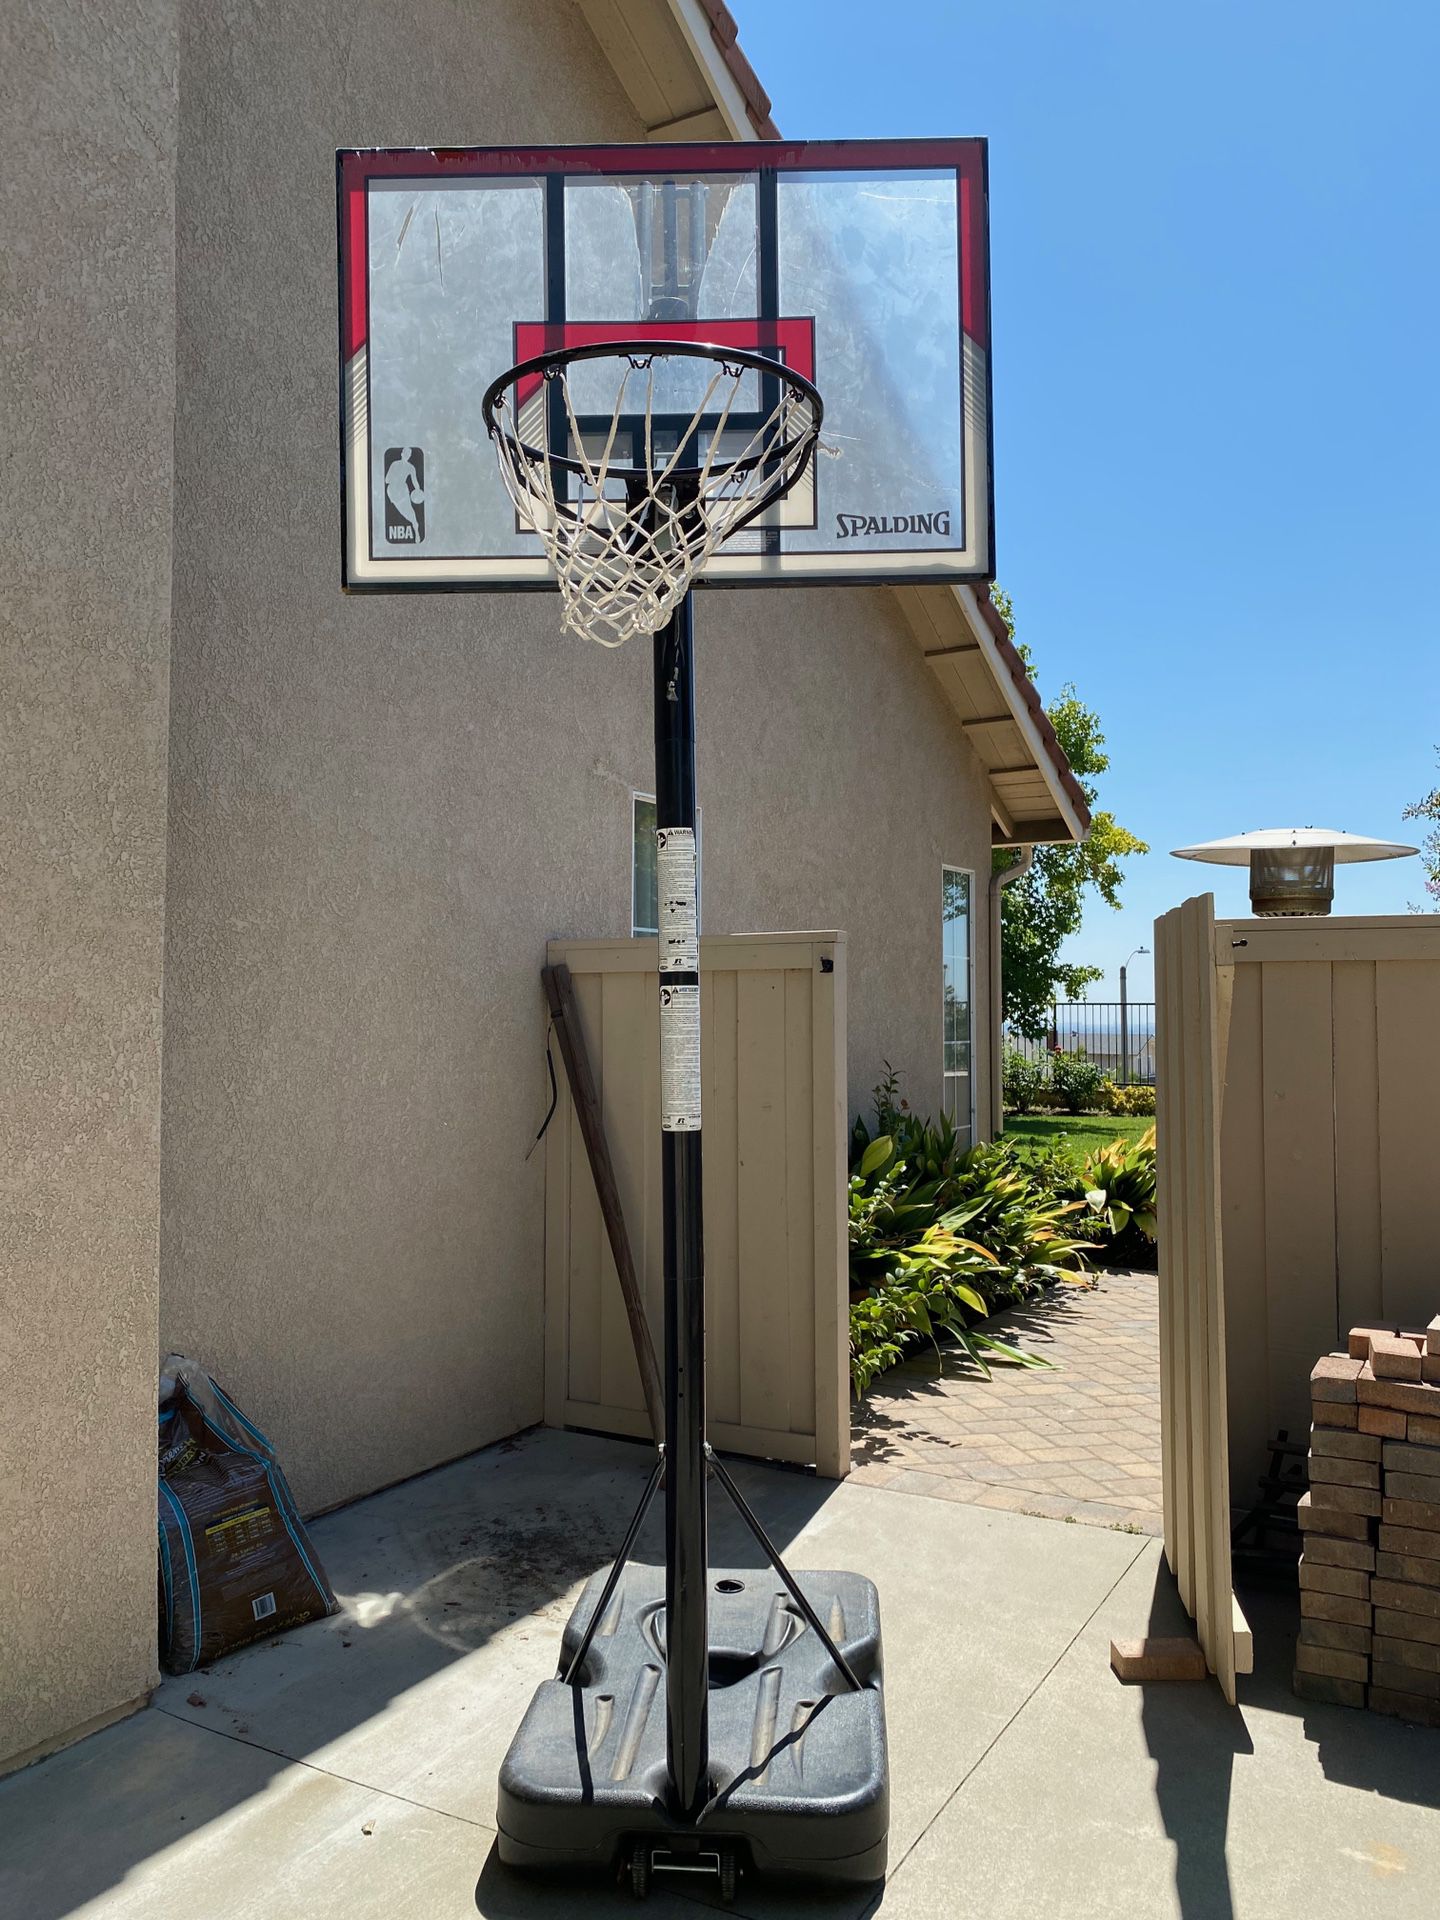 Spalding basketball court / basketball hoop